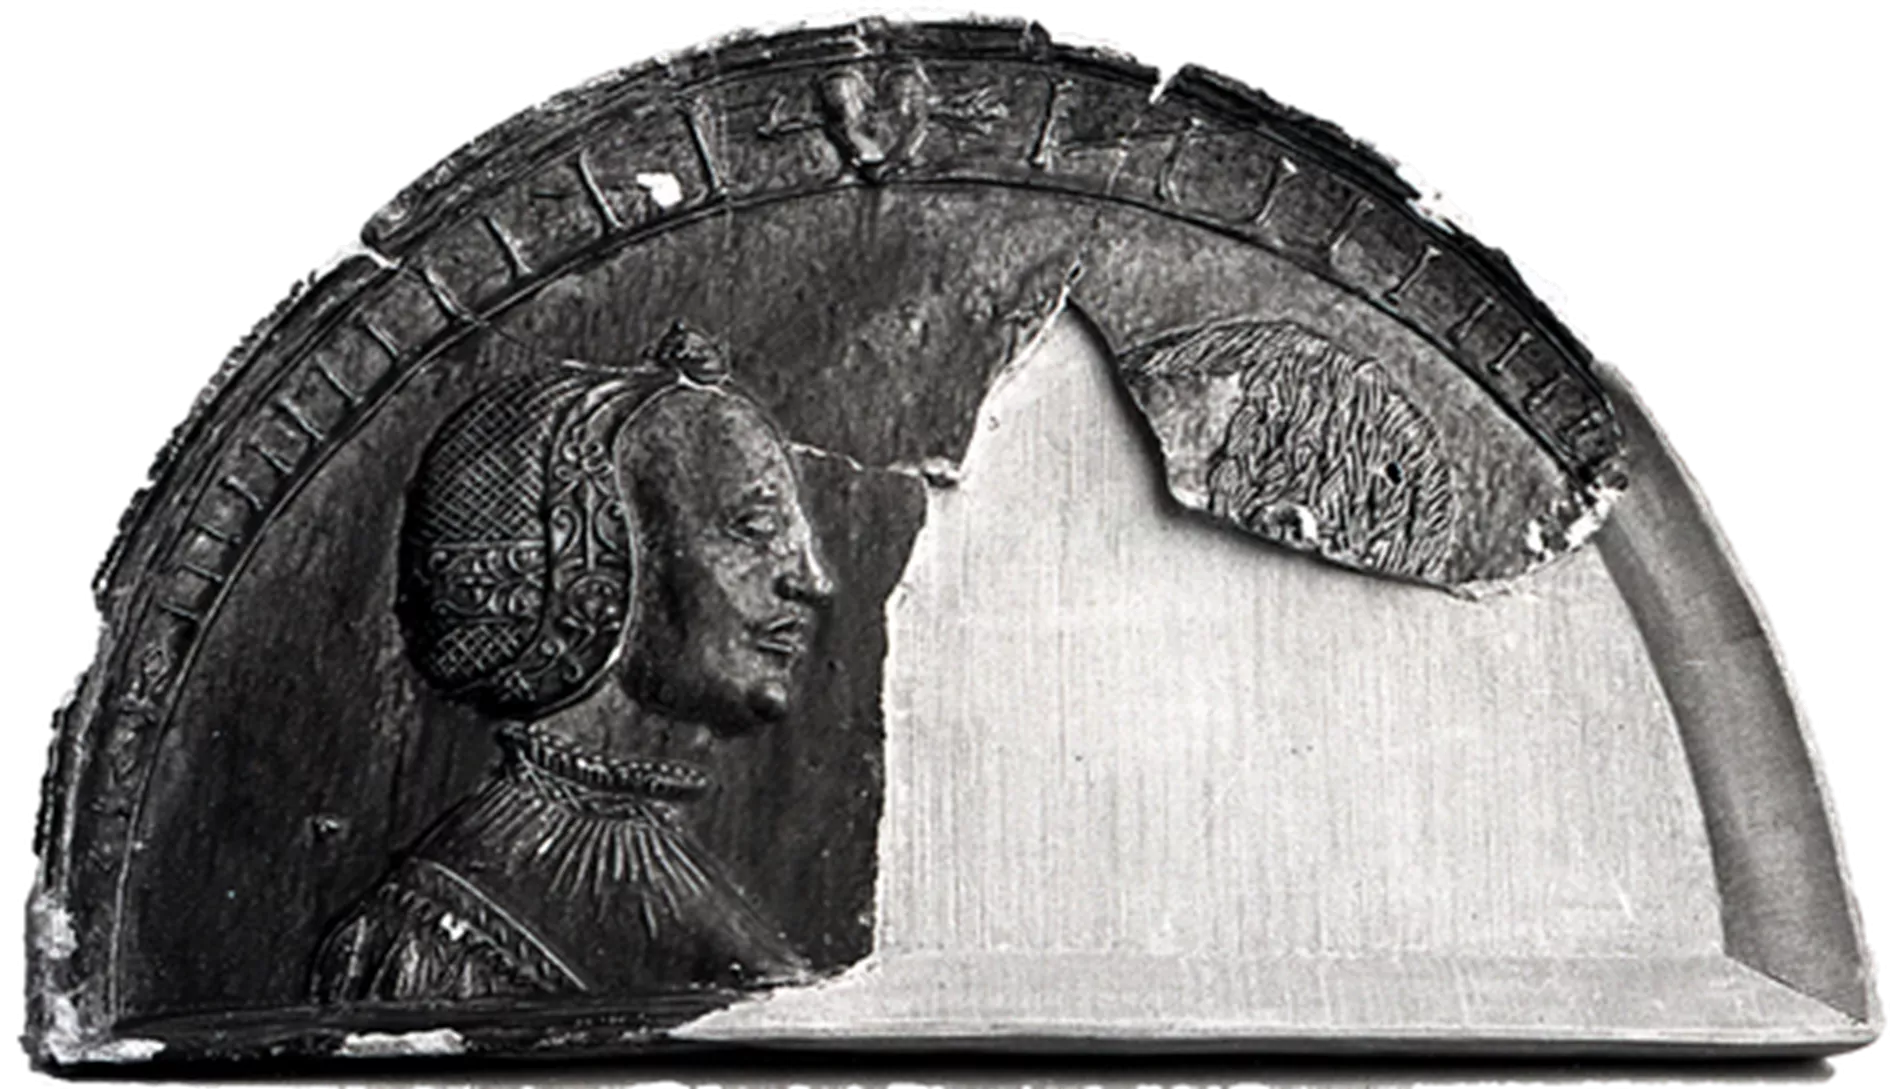 Reneszánsz ábrázolás egy egri mázas terrakotta lapon